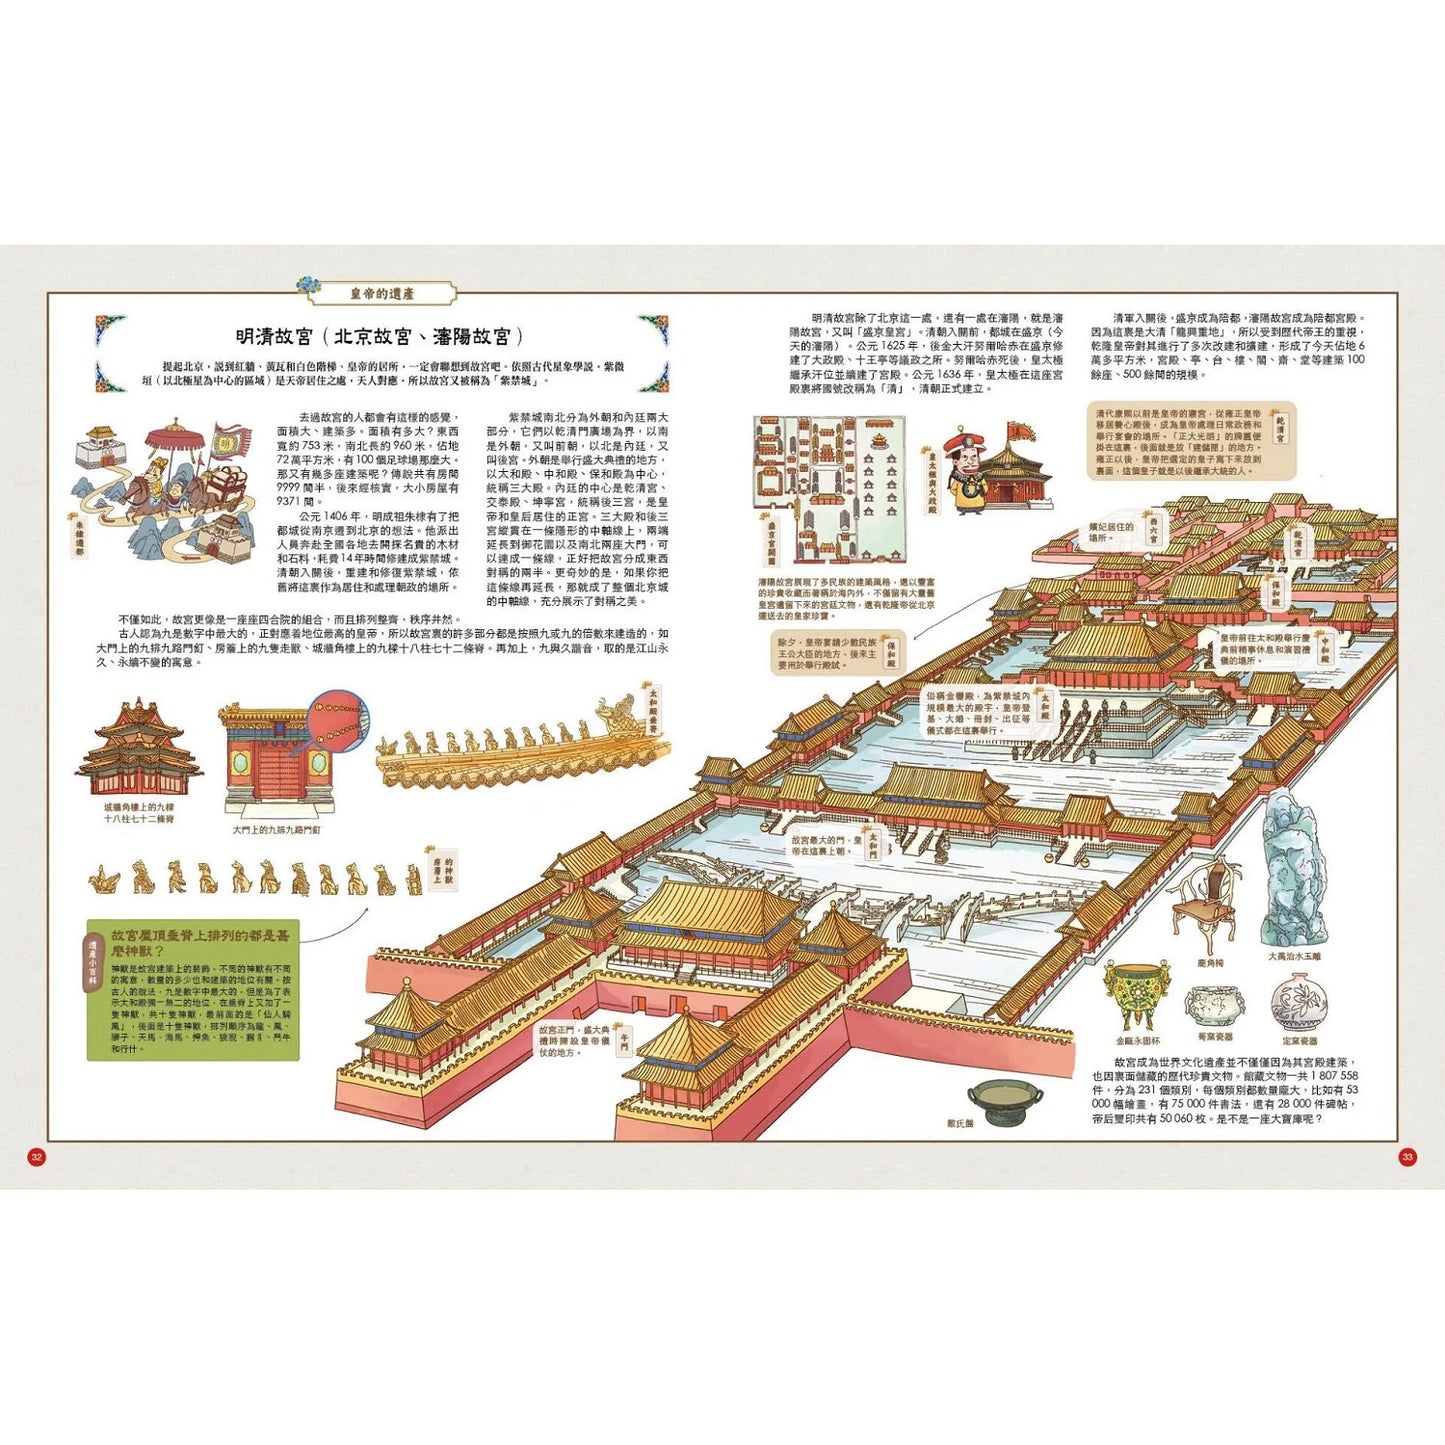 歷史裏的中國世界文化遺產